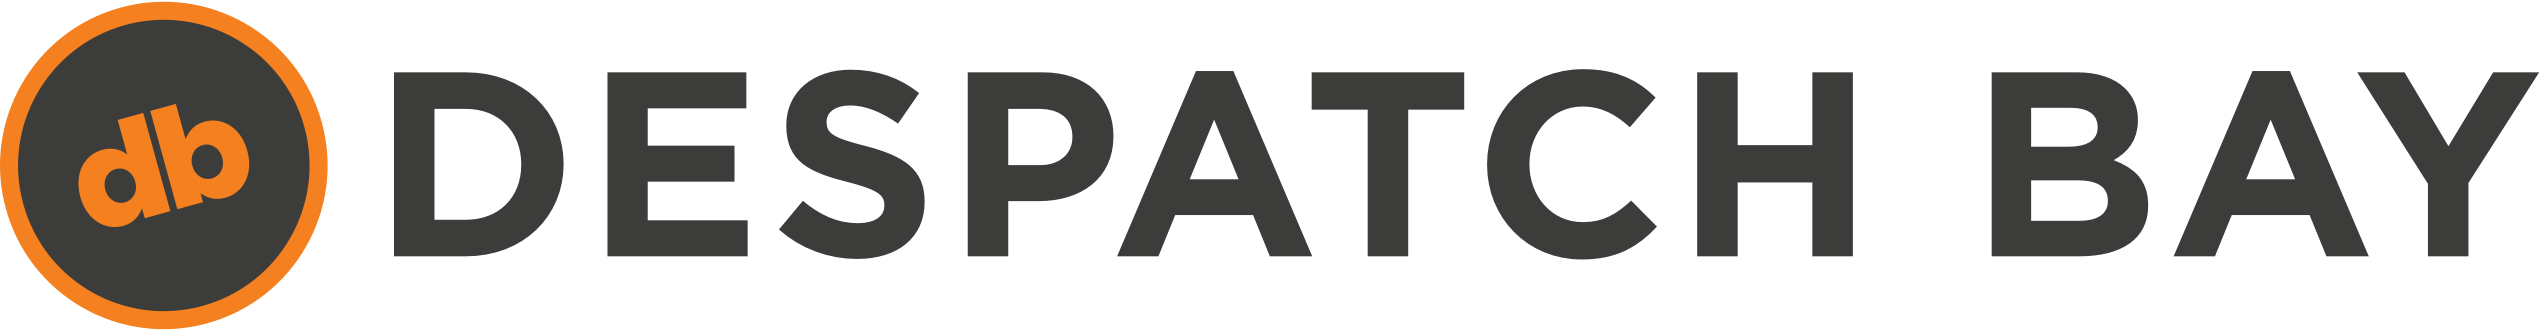 Despatchbay logo